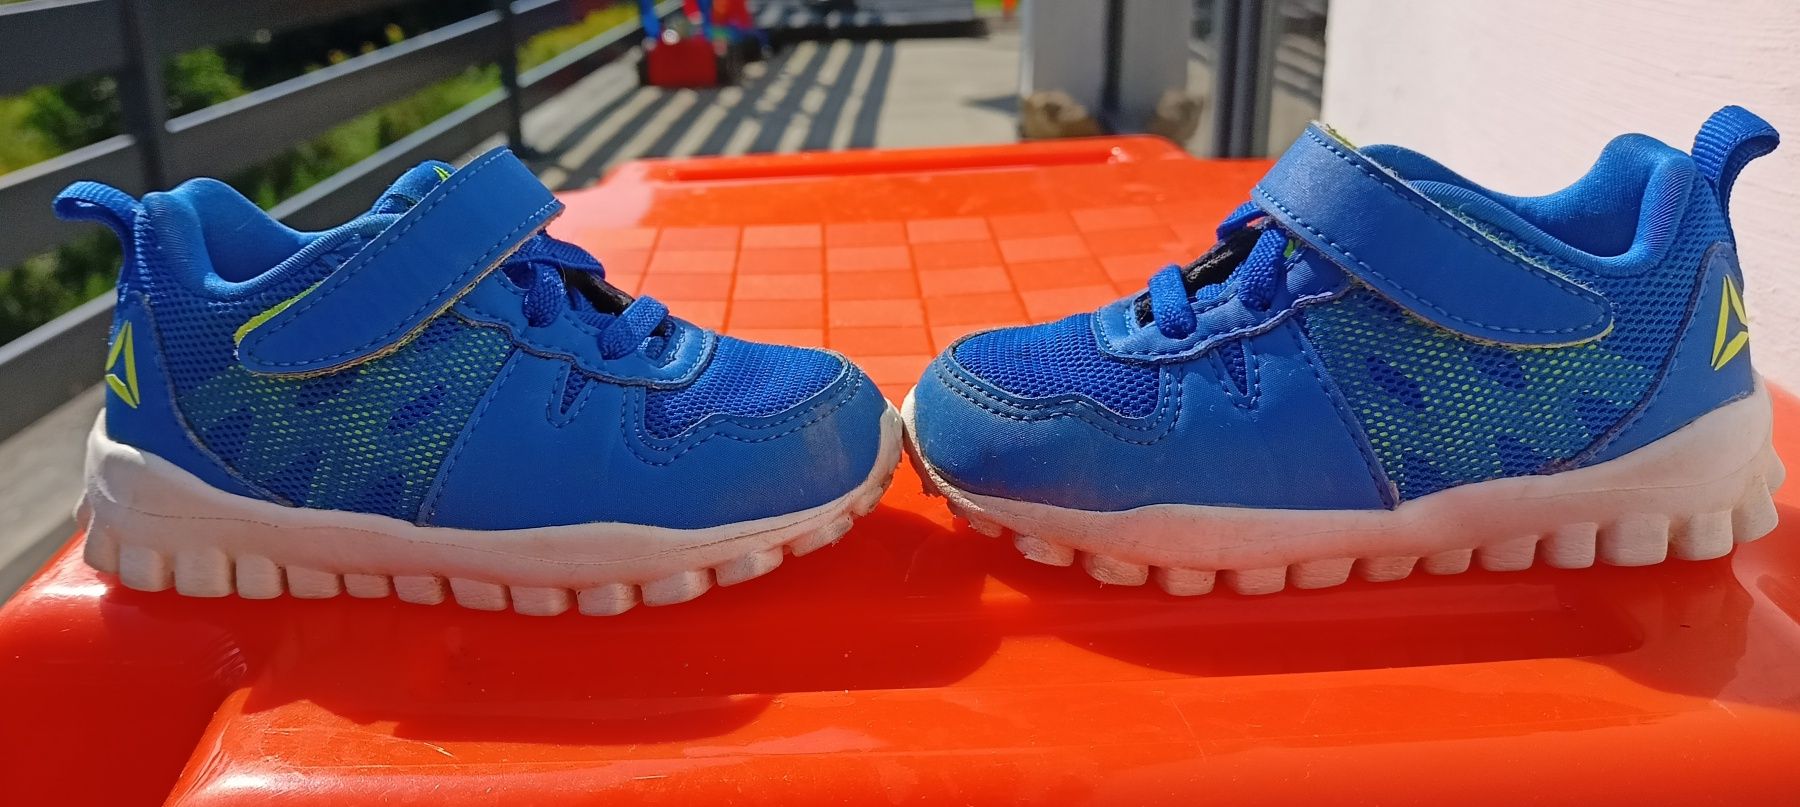 Reebok buty dziecięce sportowe niebieskie rzepy